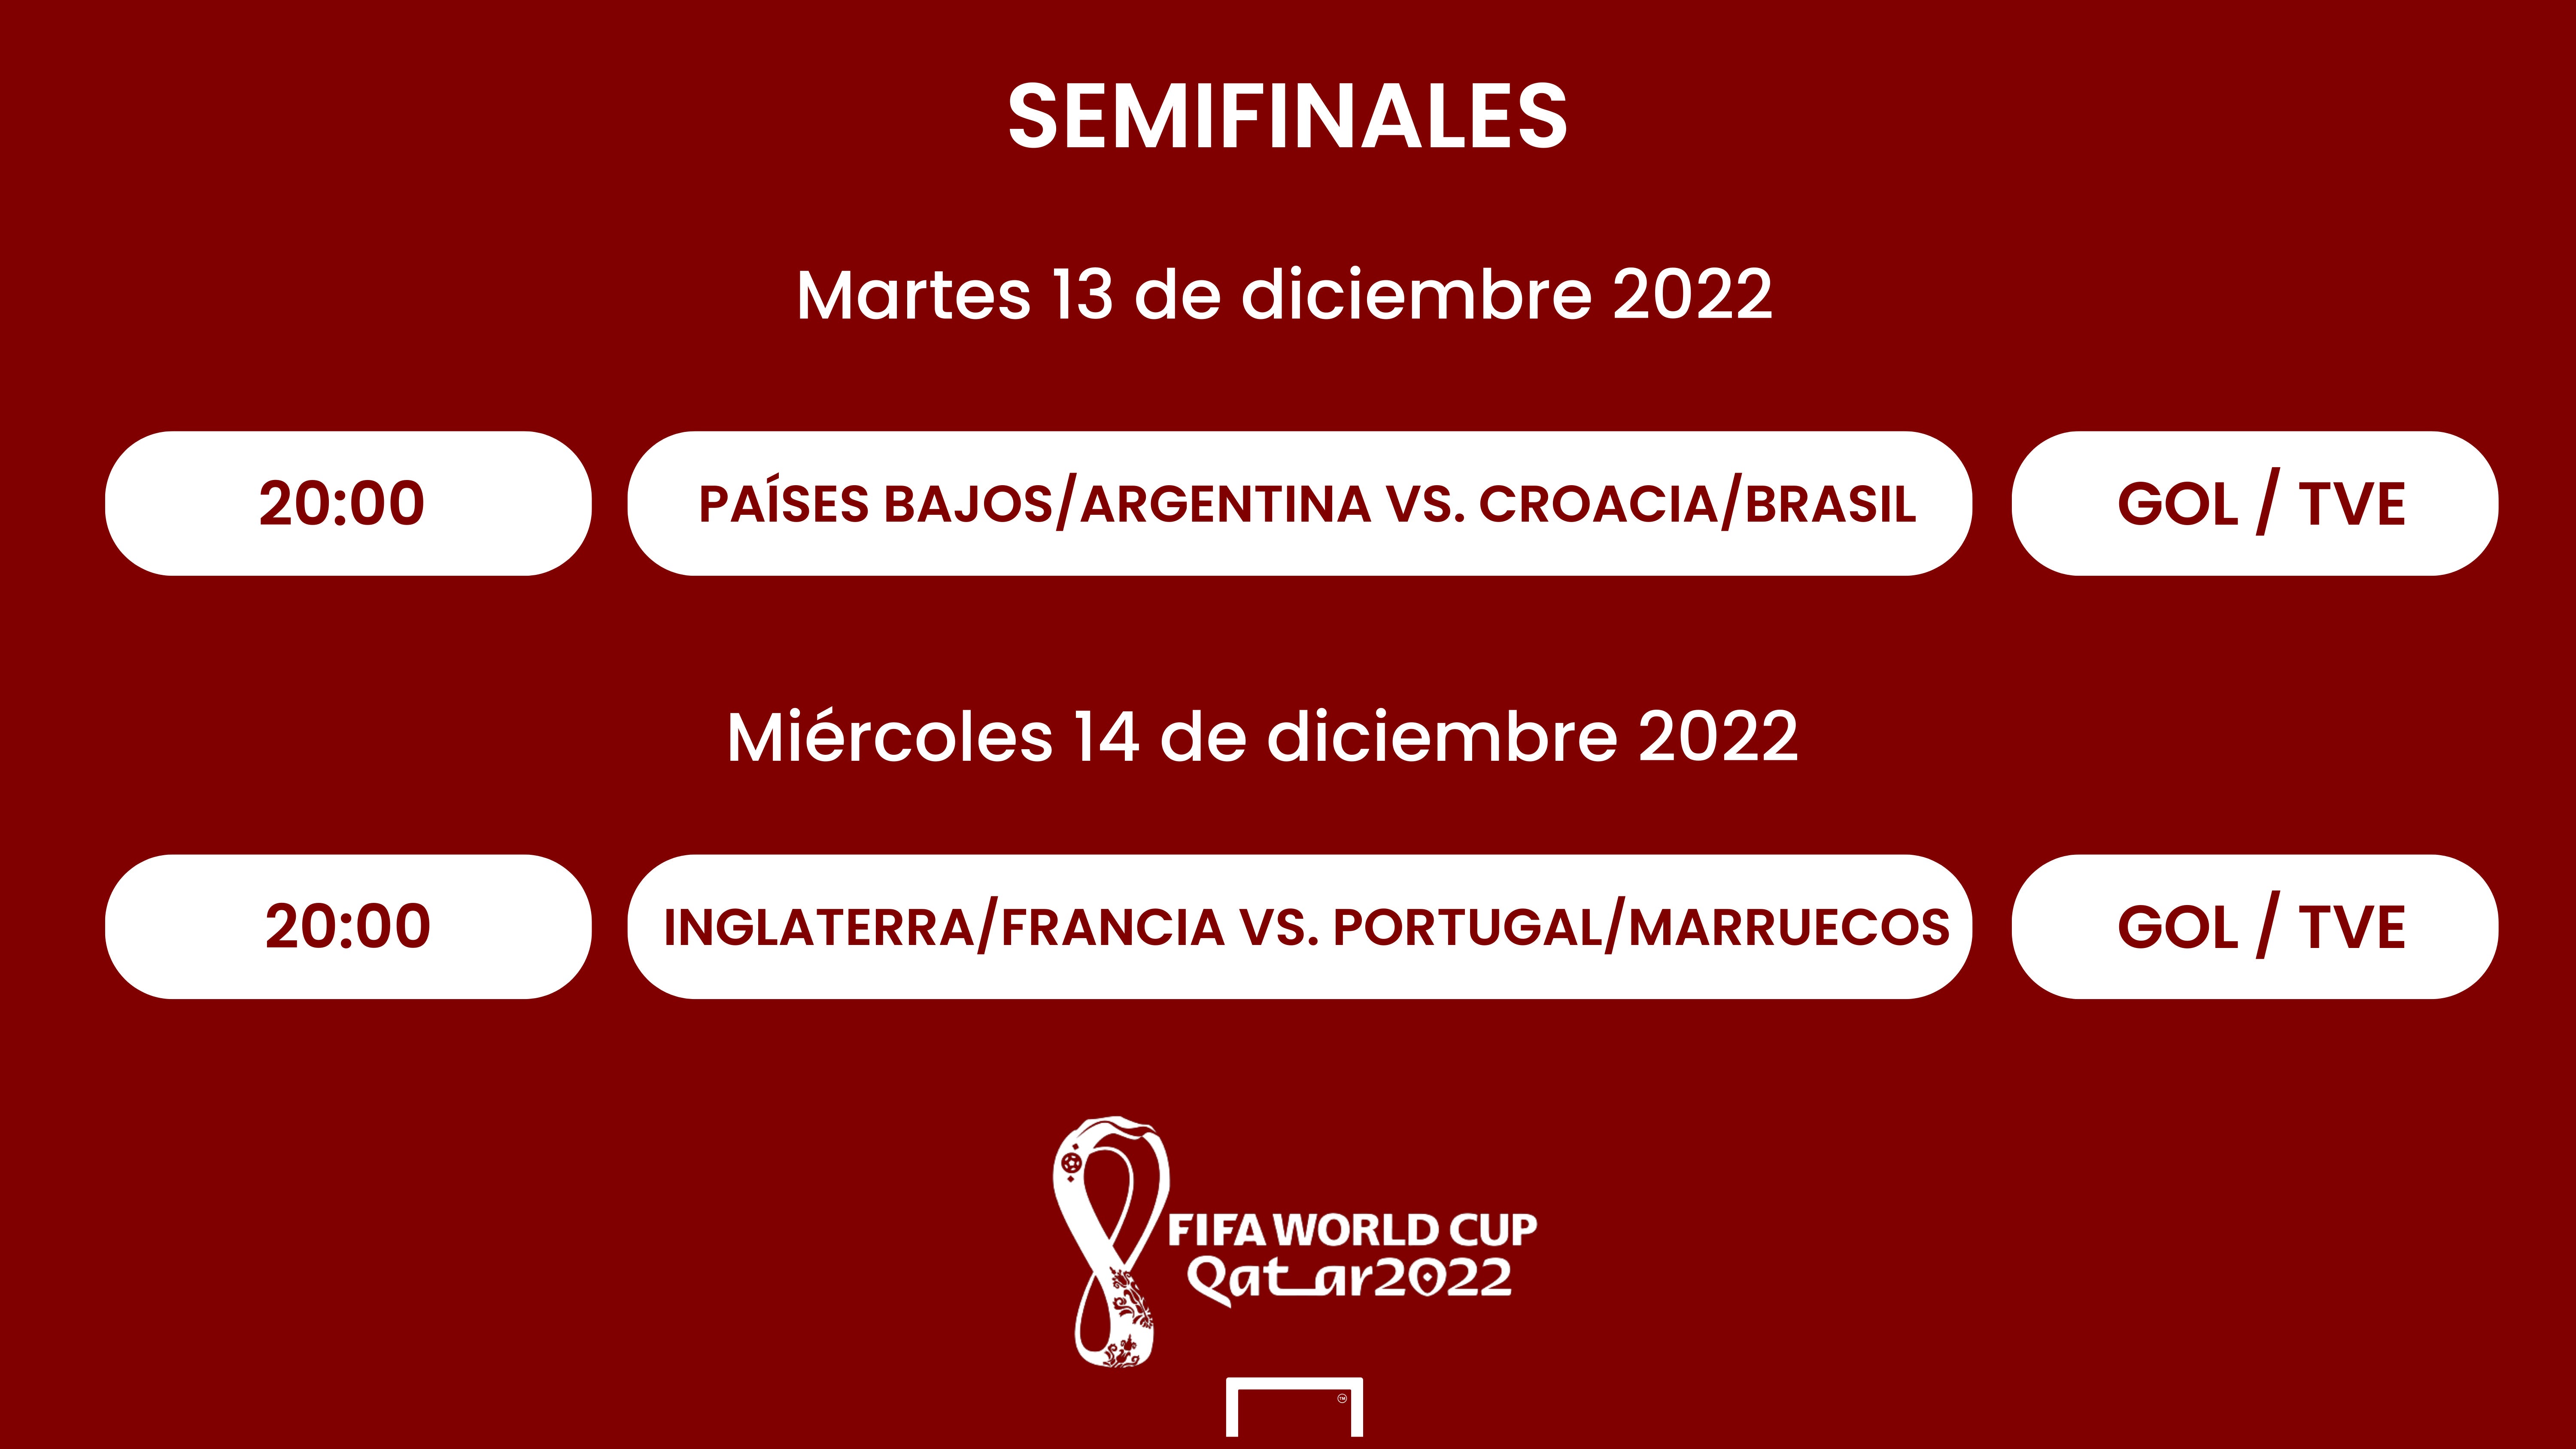 Eliminar Centelleo En consecuencia Semifinales del Mundial Qatar 2022: Cuándo son, selecciones clasificadas,  partidos, fechas, horarios y resultados | Goal.com Espana